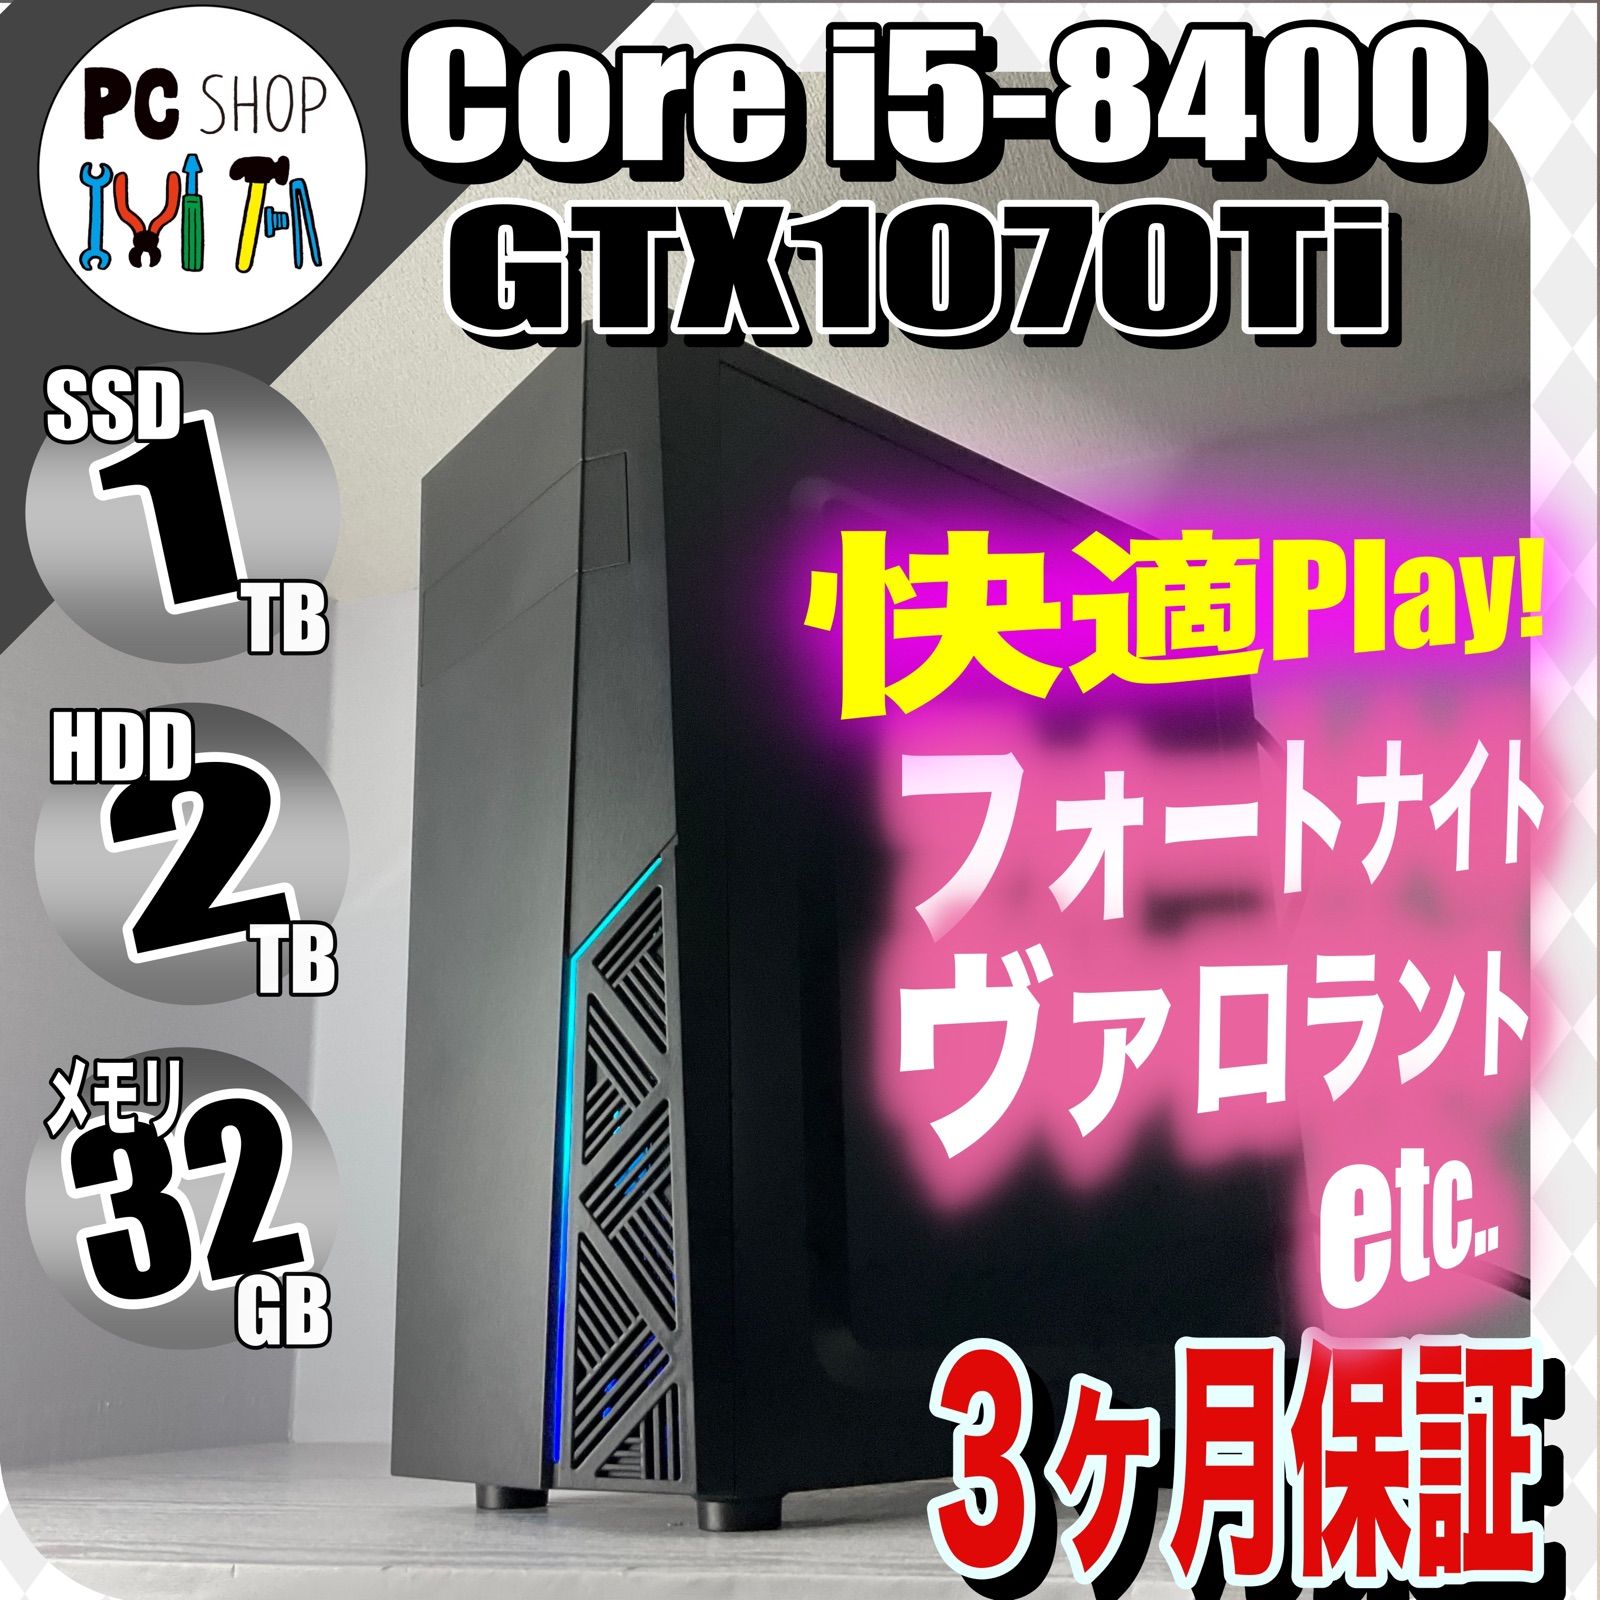 MA-010101］GTX1070Ti ゲーミングPC Core i5-8400 SSD 1TB メモリ 32GB